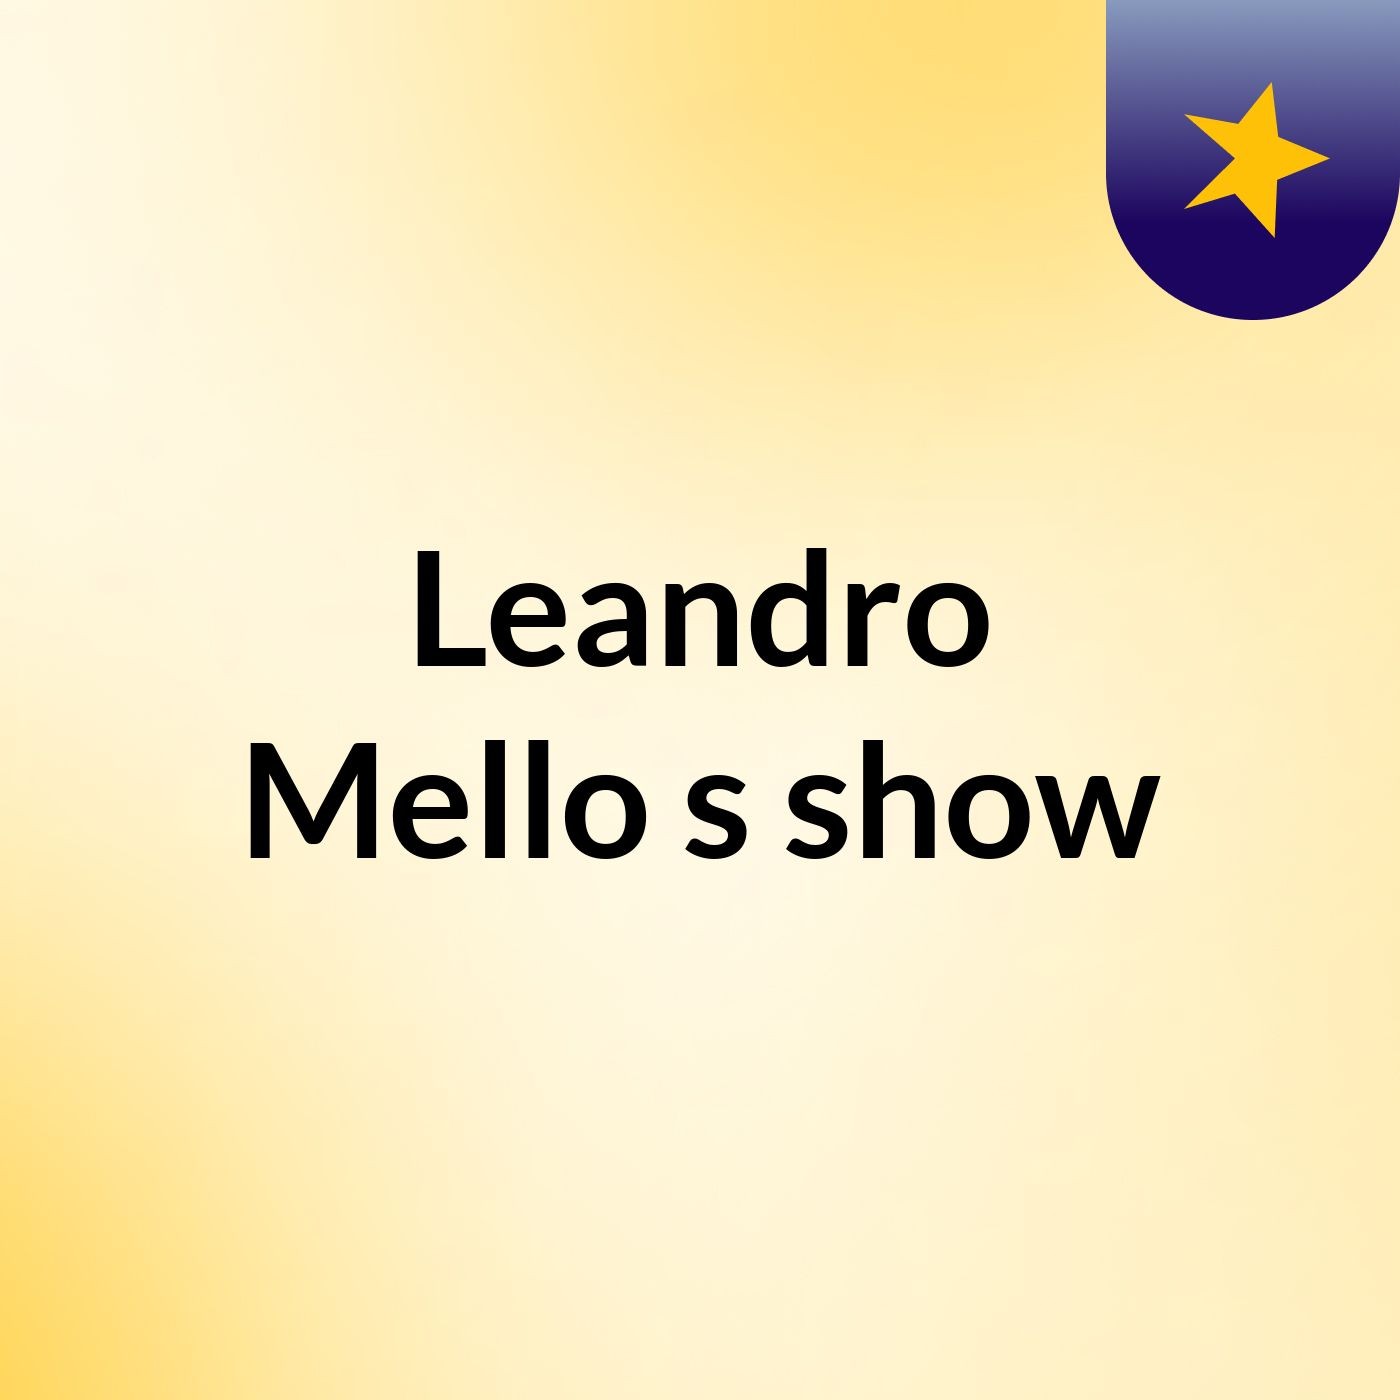 Leandro Mello's show